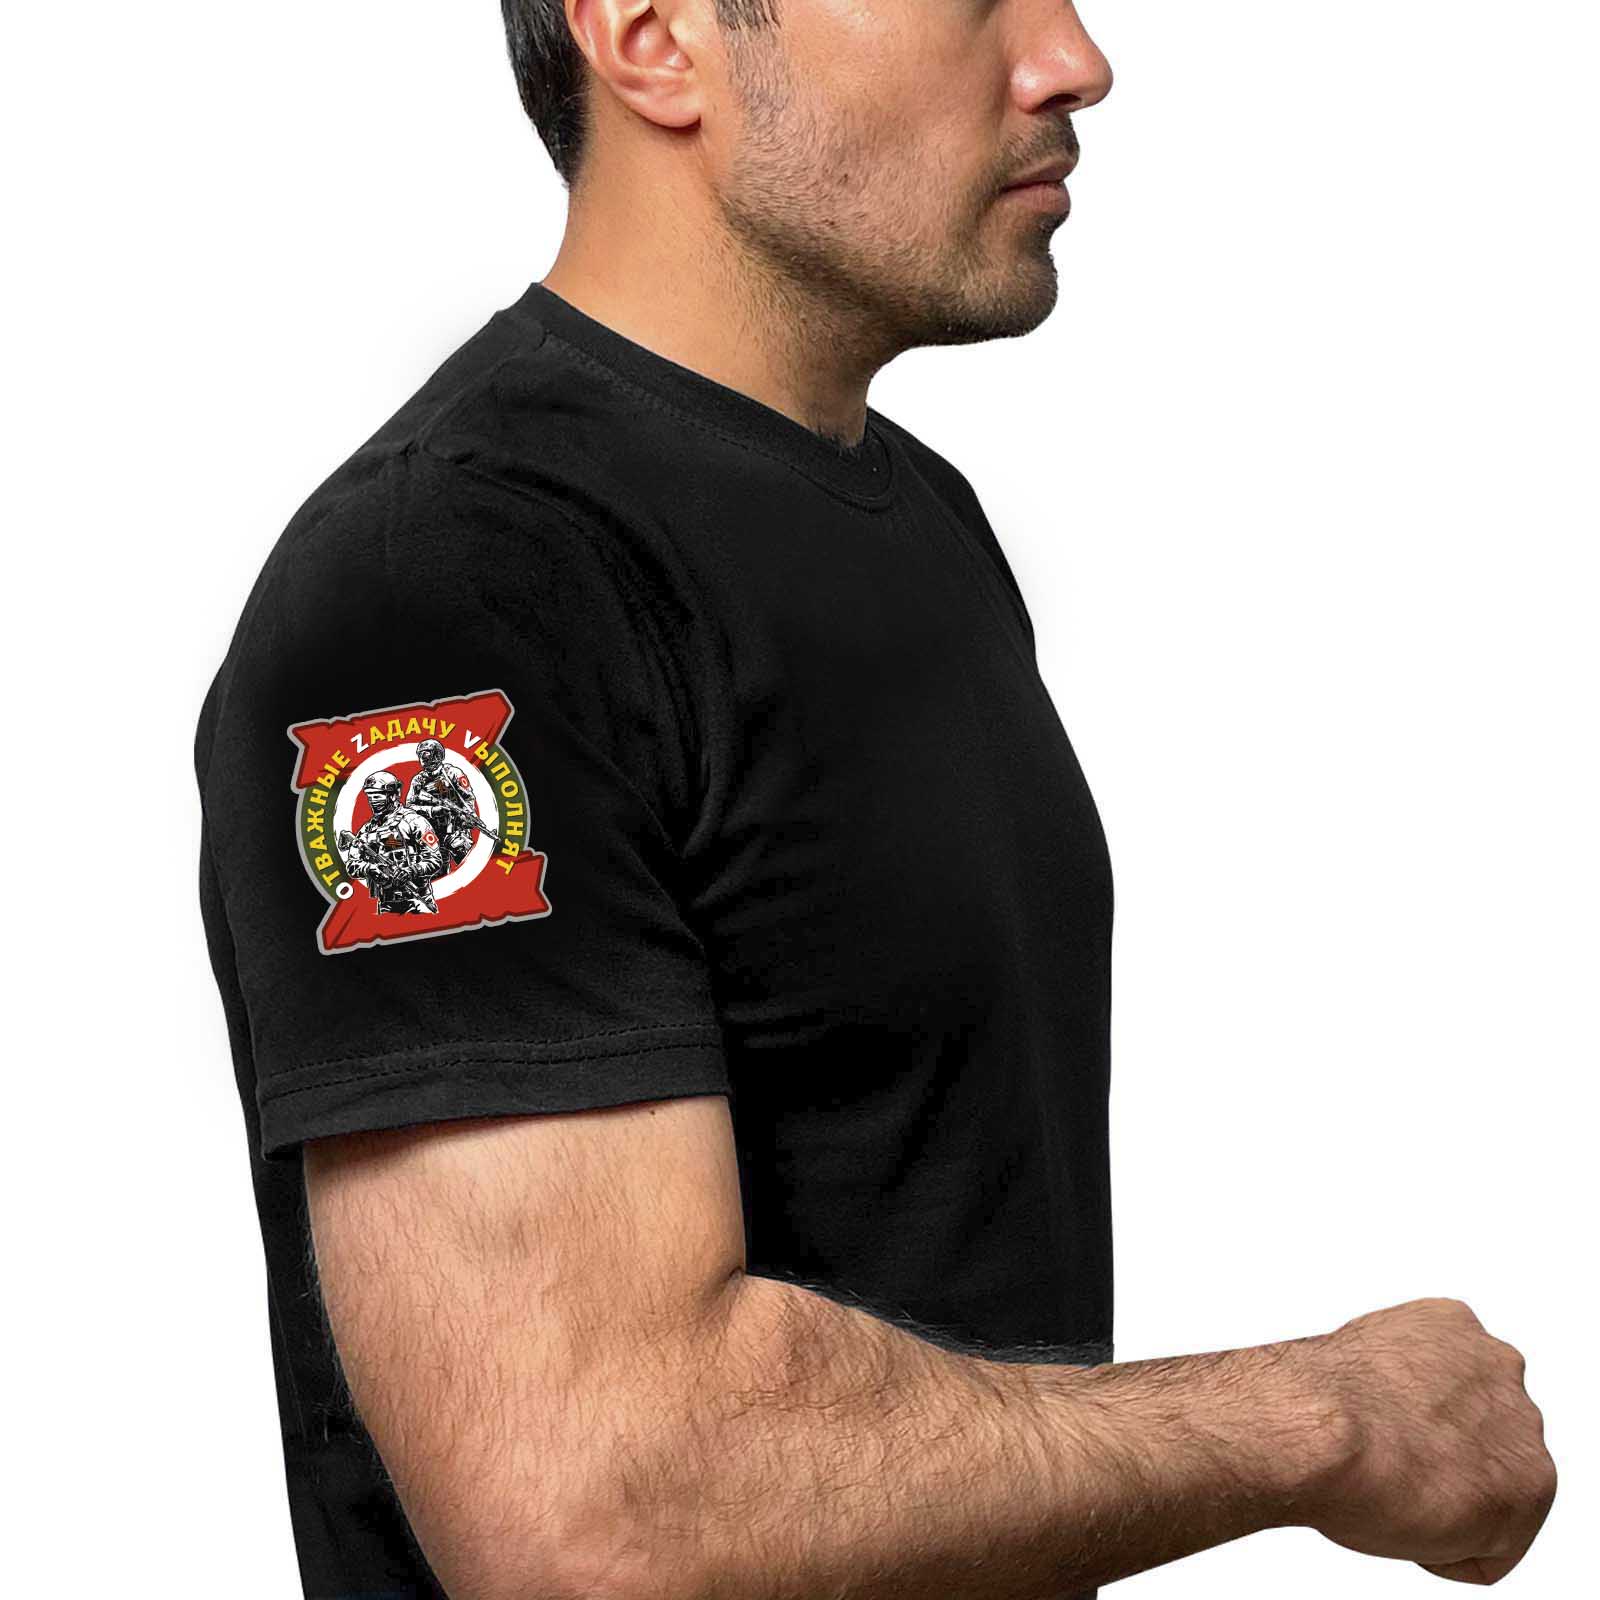 Чёрная футболка с термотрансфером "Отважные Zадачу Vыполнят" на рукаве